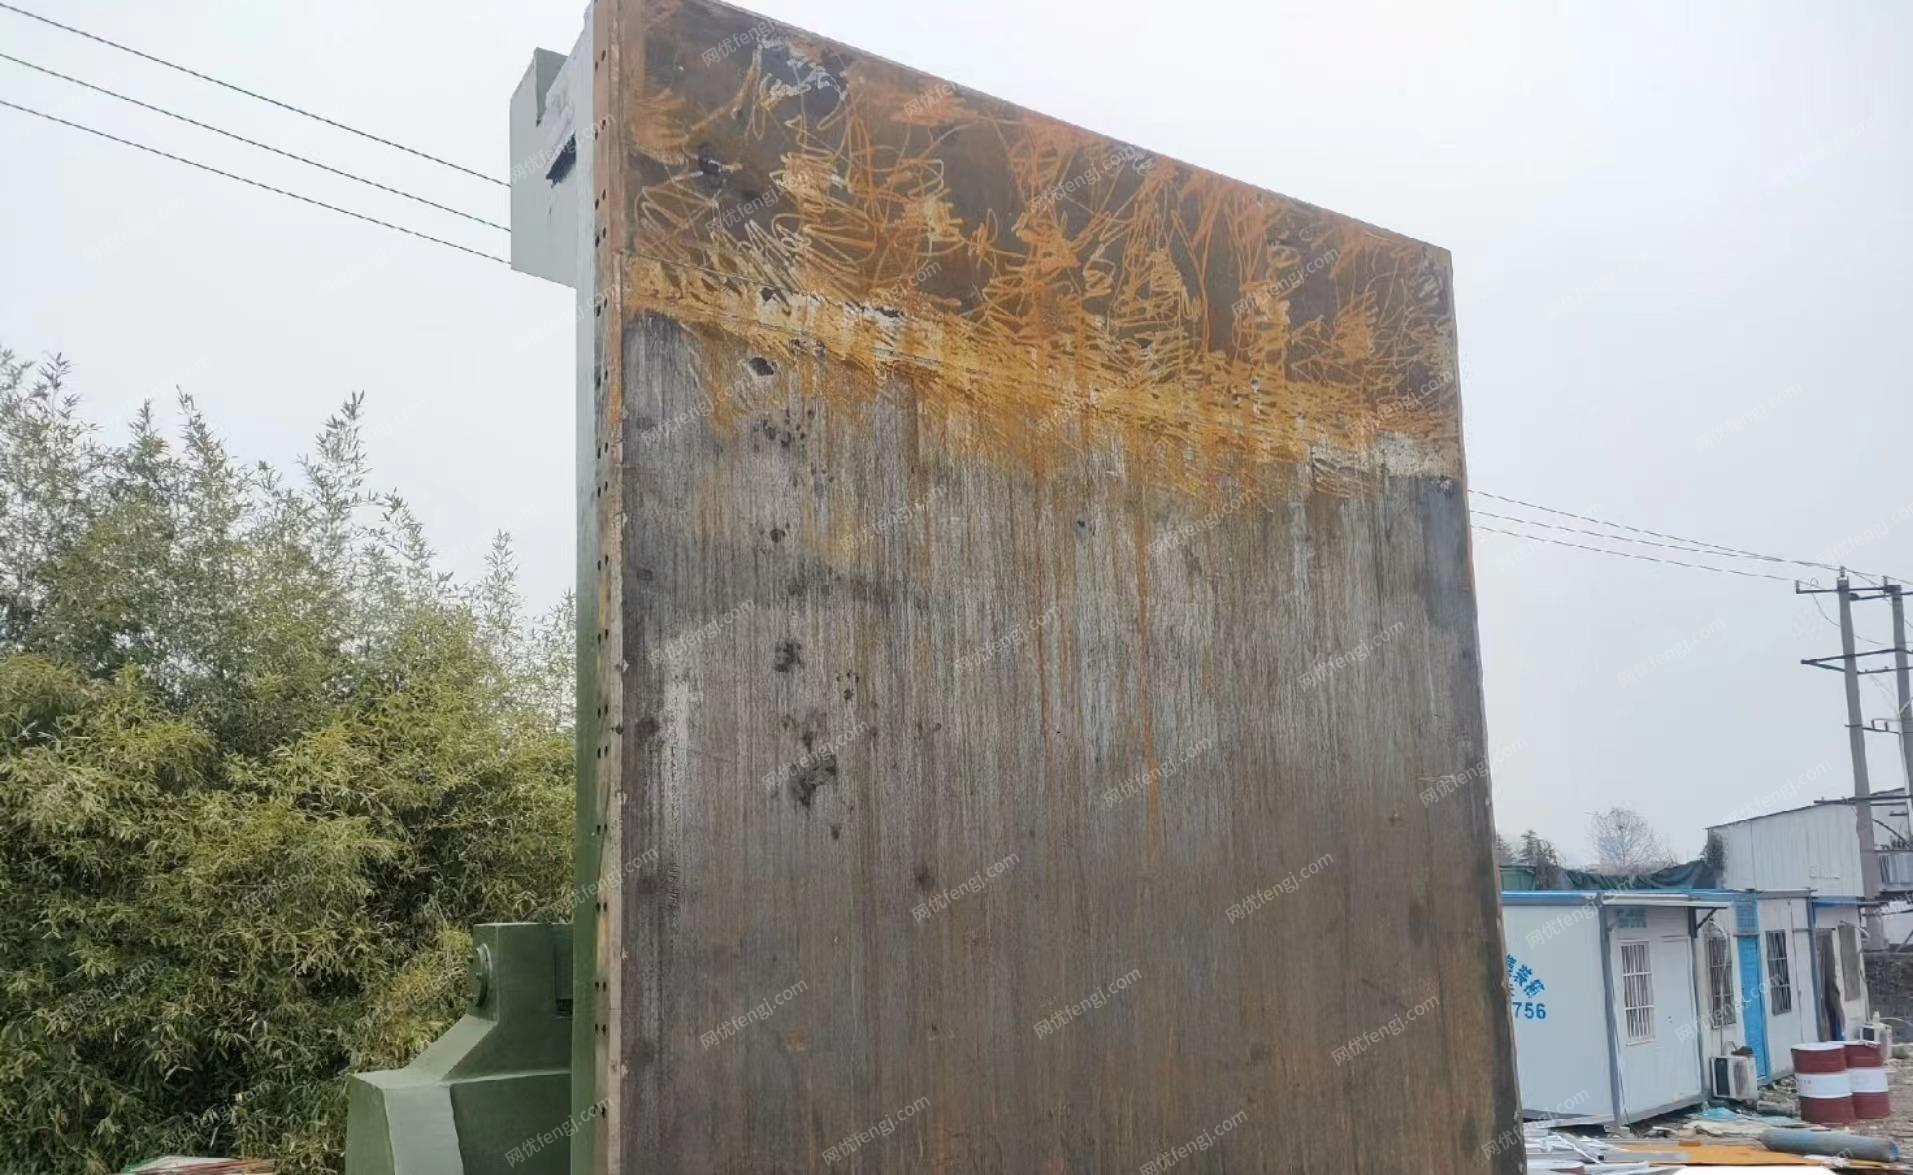 安徽合肥个人华建400吨废钢打包机处理